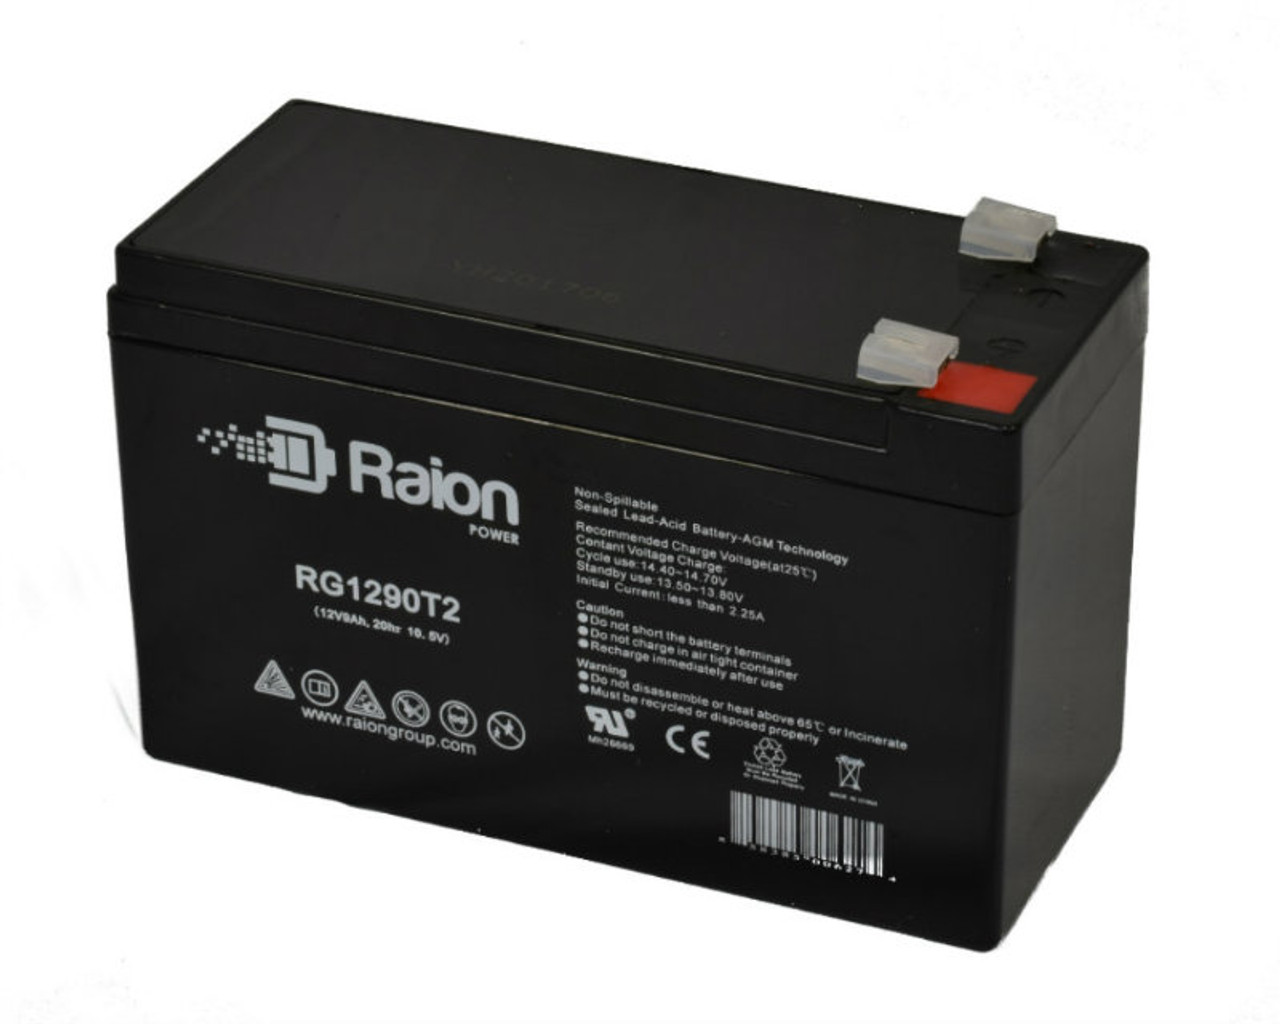 Raion Power RG1290T2 12V 9Ah AGM Battery for Vasworld Power GB12-9